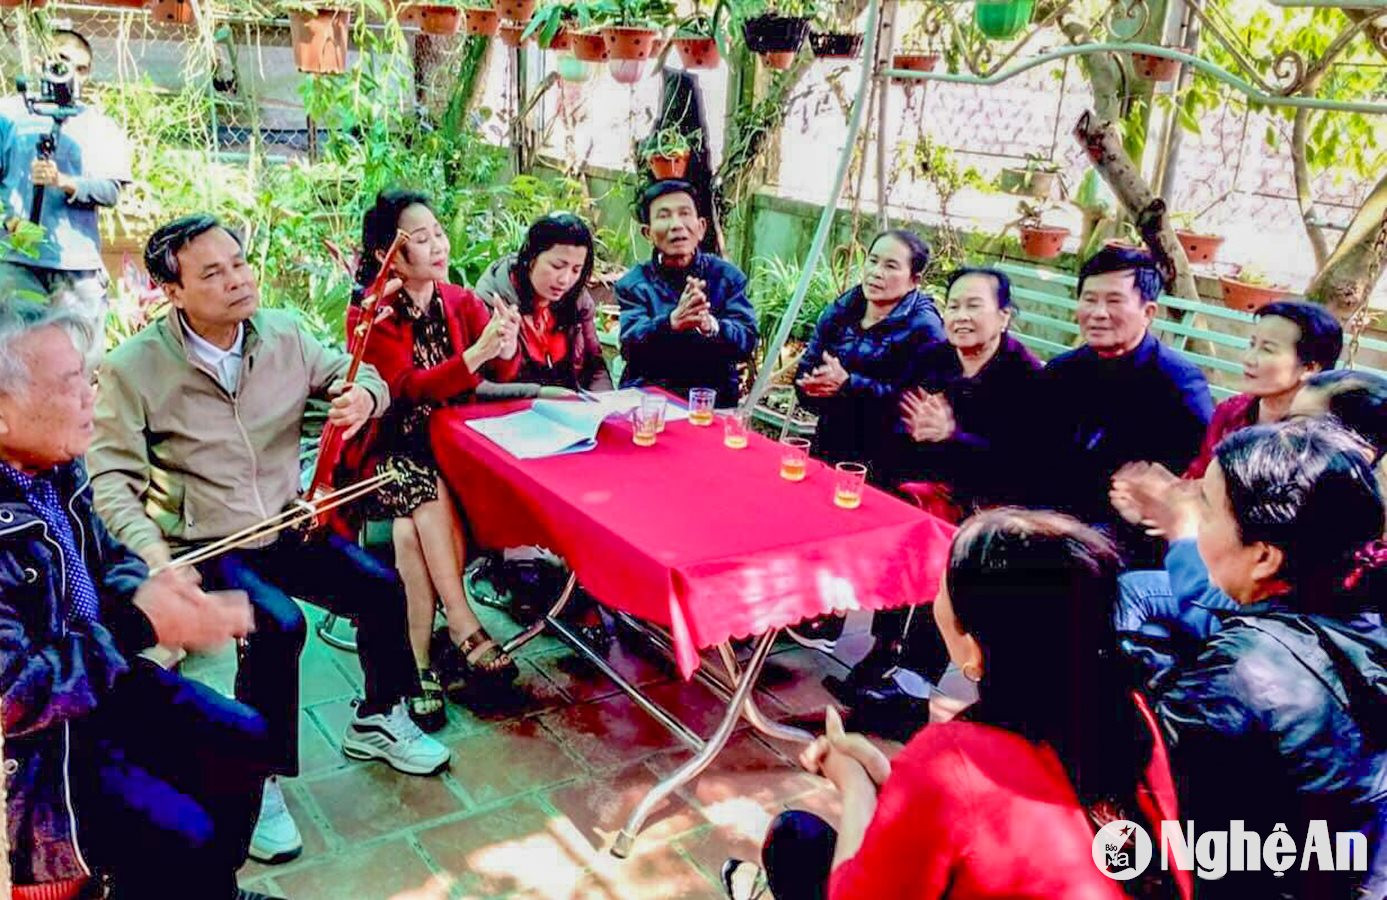 Ông Lê Xuân Hiển (người kéo nhị) và bà Nguyễn Thị Lê tại một buổi sinh hoạt của CLB Dân ca ví, giặm xã Minh Châu